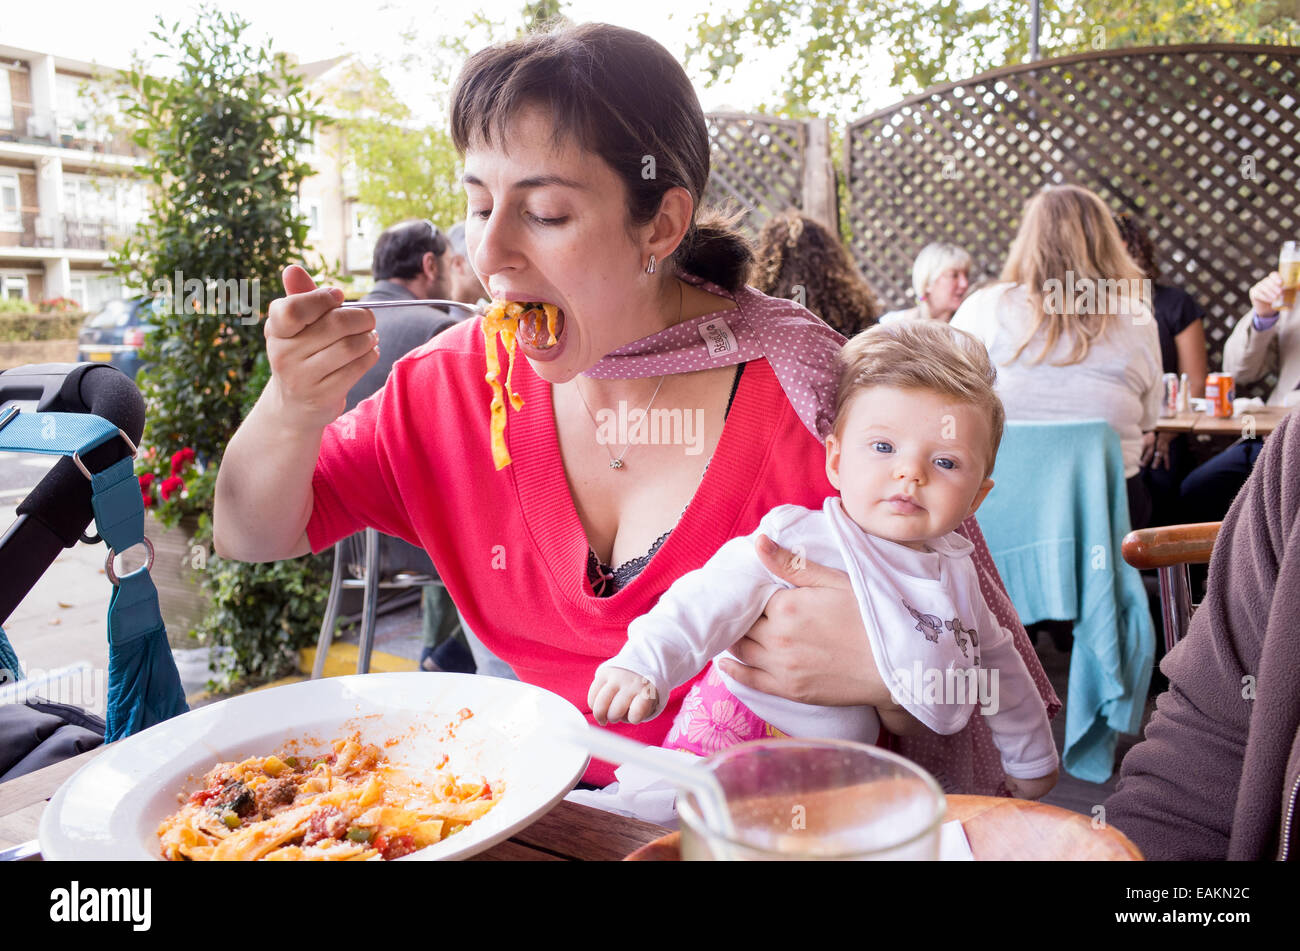 Mutter Pasta im Restaurant Essen und halten kleine 3 Monate Babymädchen in ihre Arme, London, England, UK Stockfoto